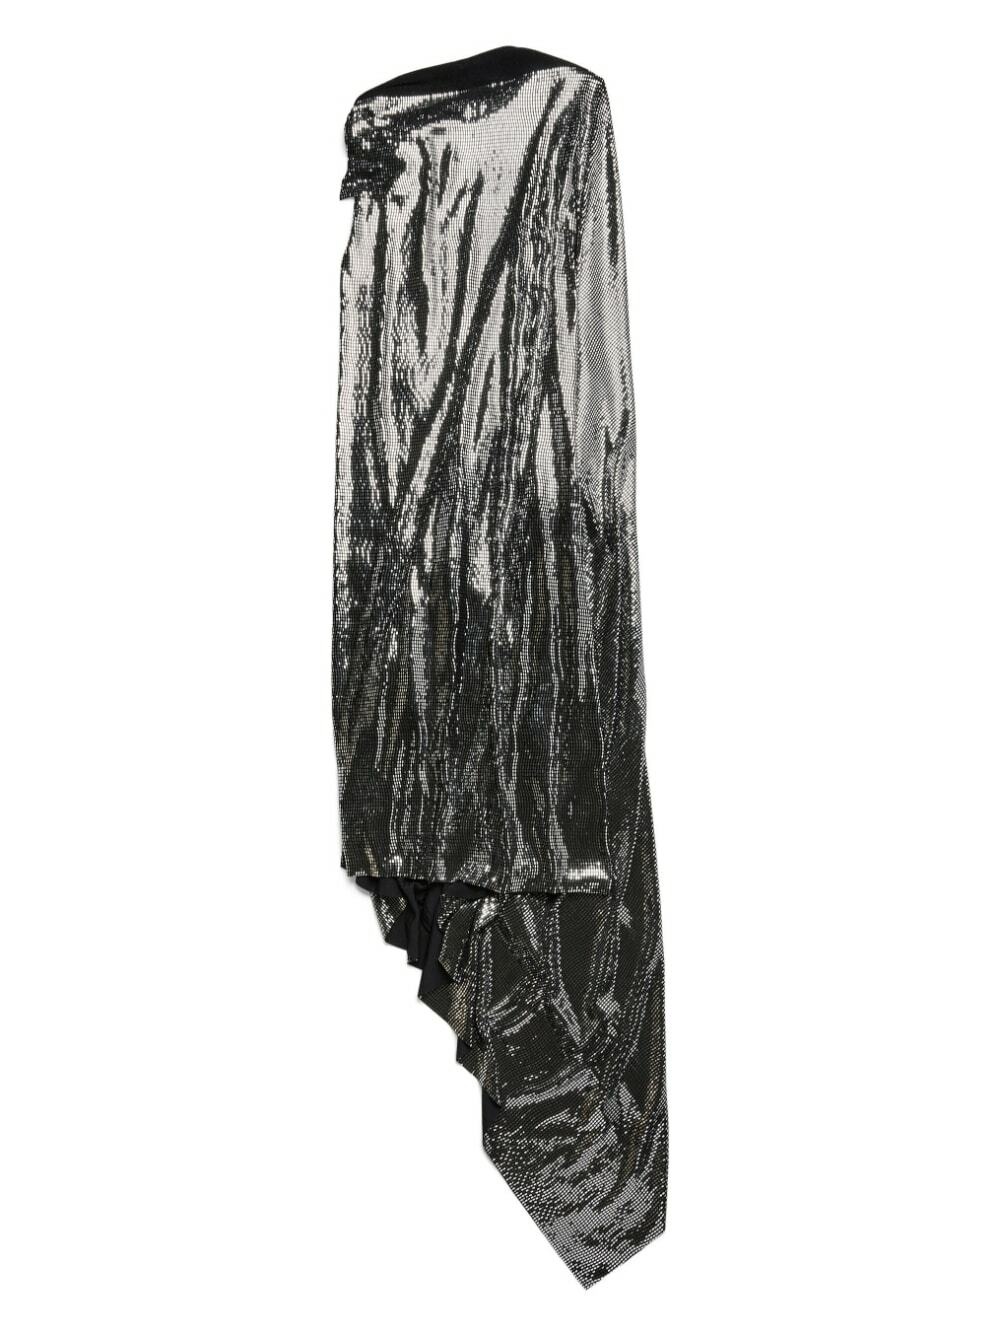 BALENCIAGA - Metallic Effect Midi Dress Balenciaga